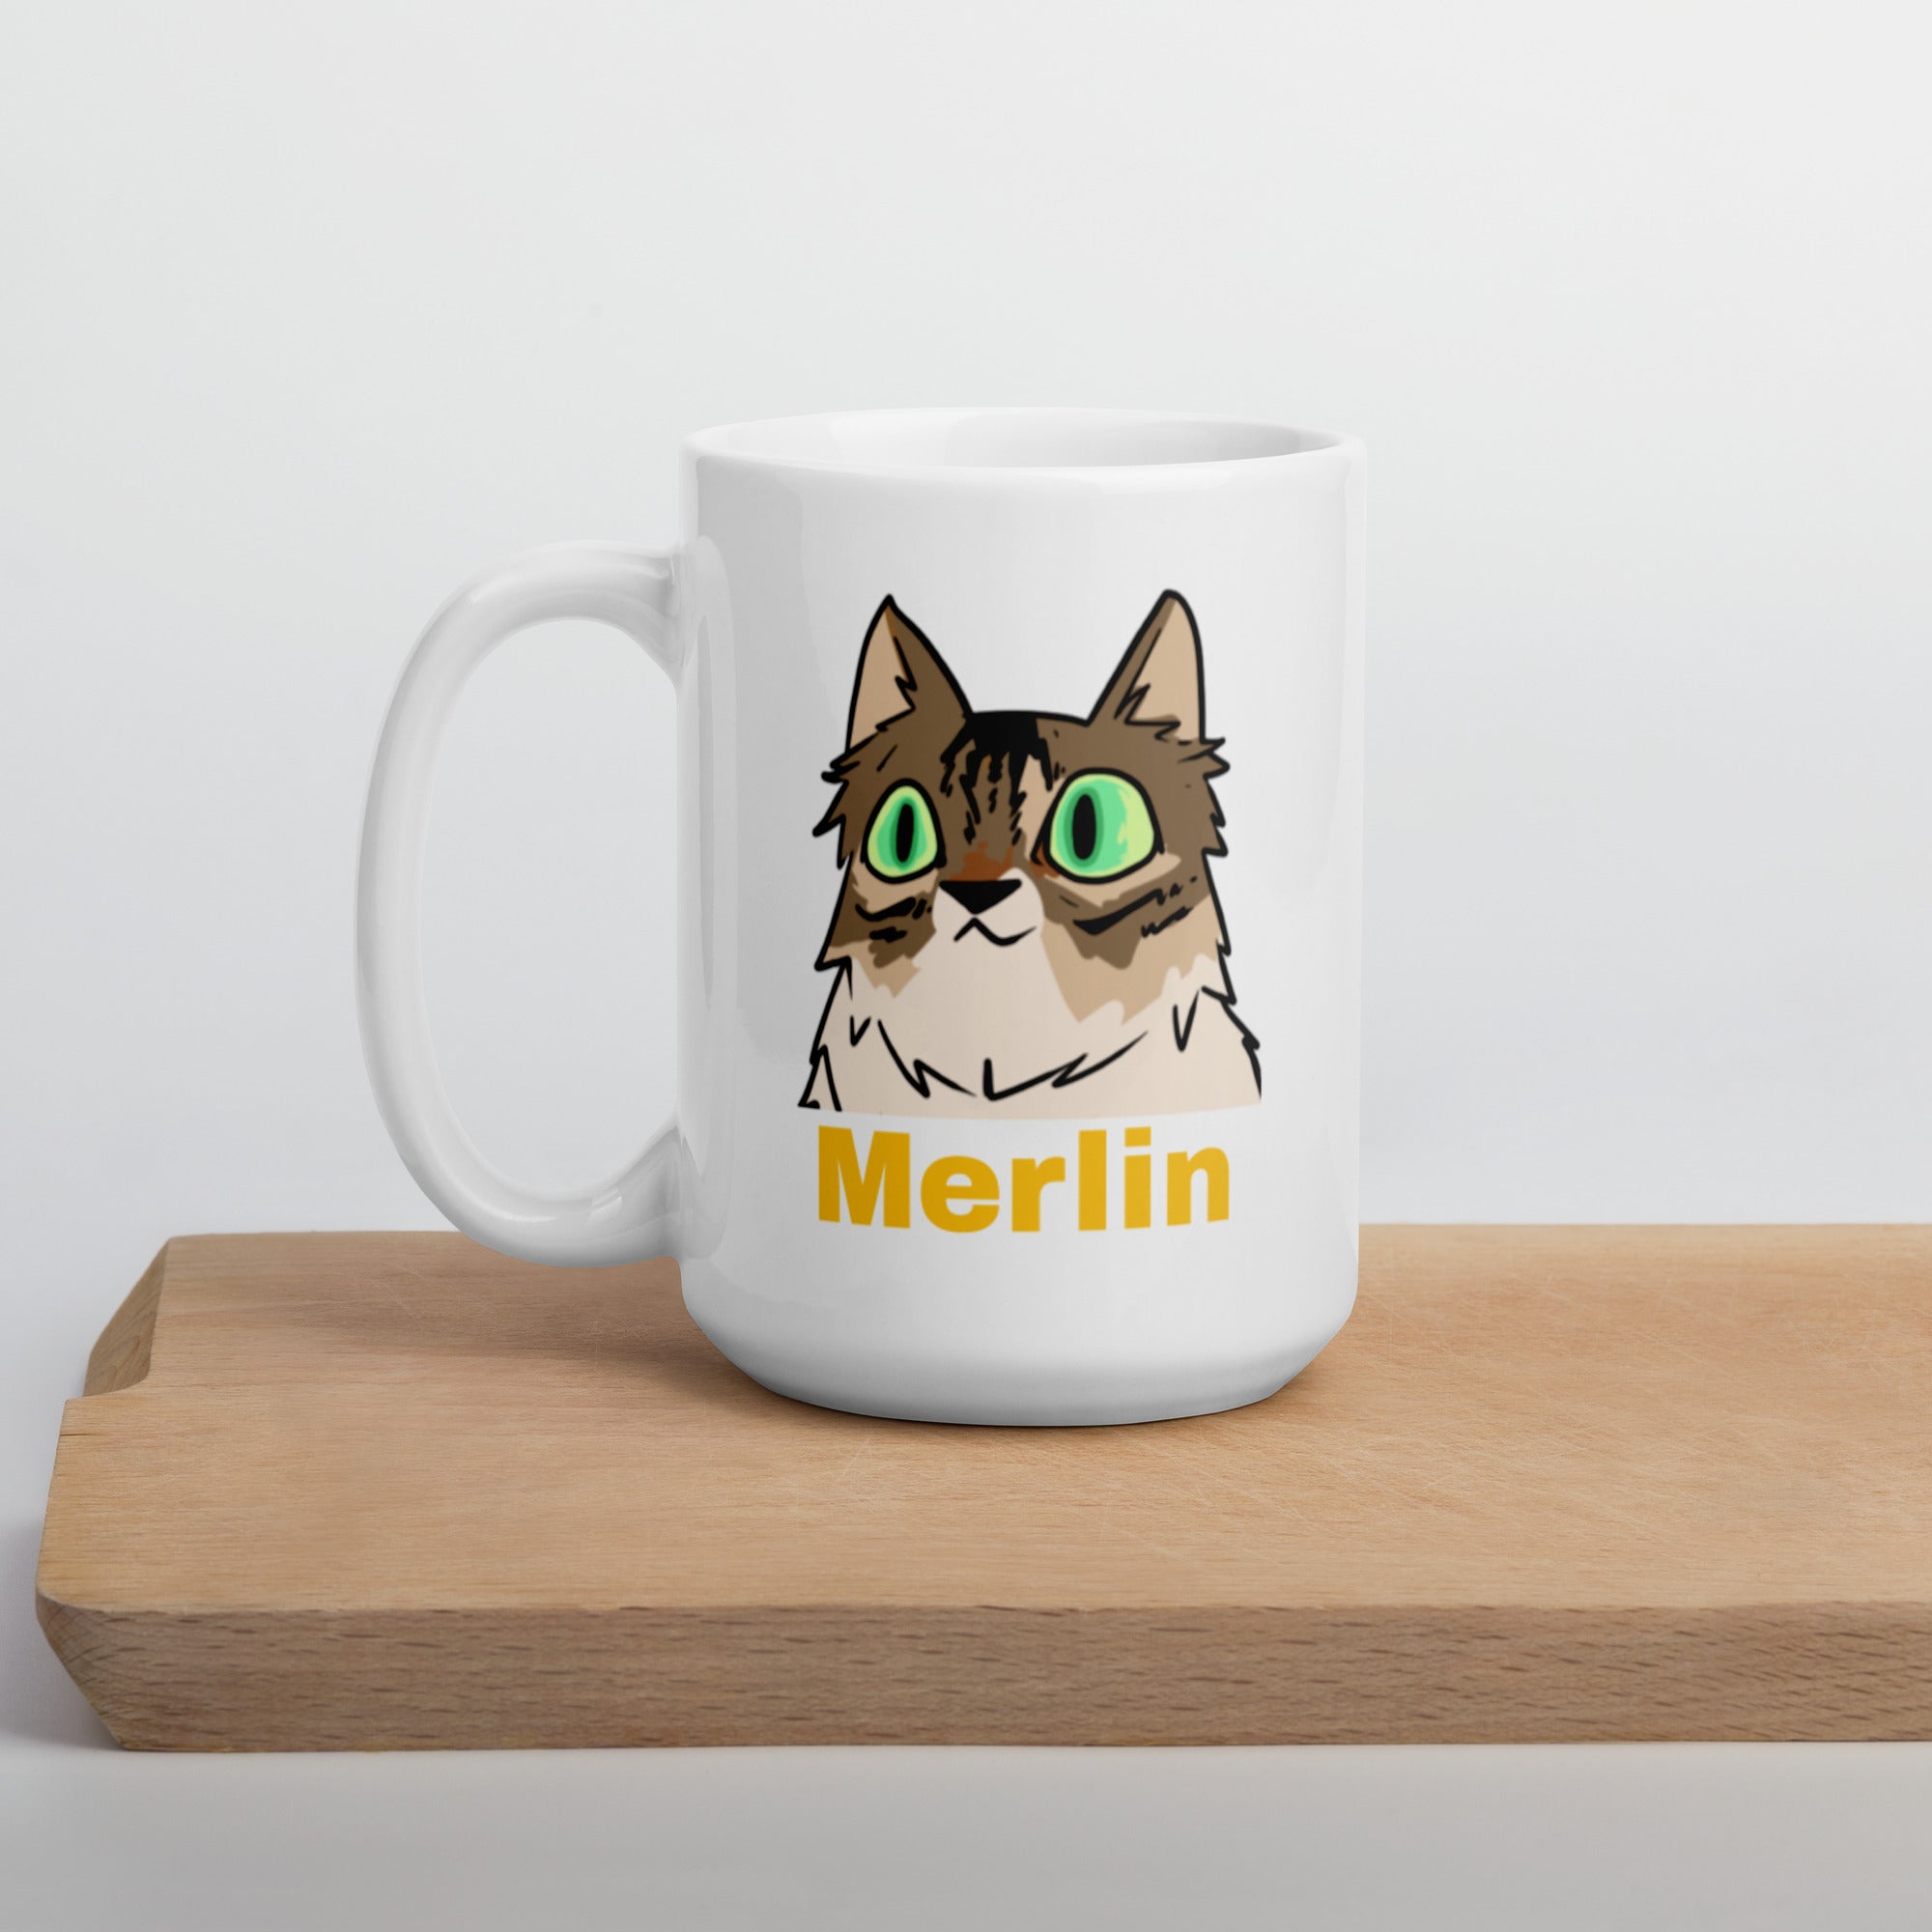 Taza de Merlin